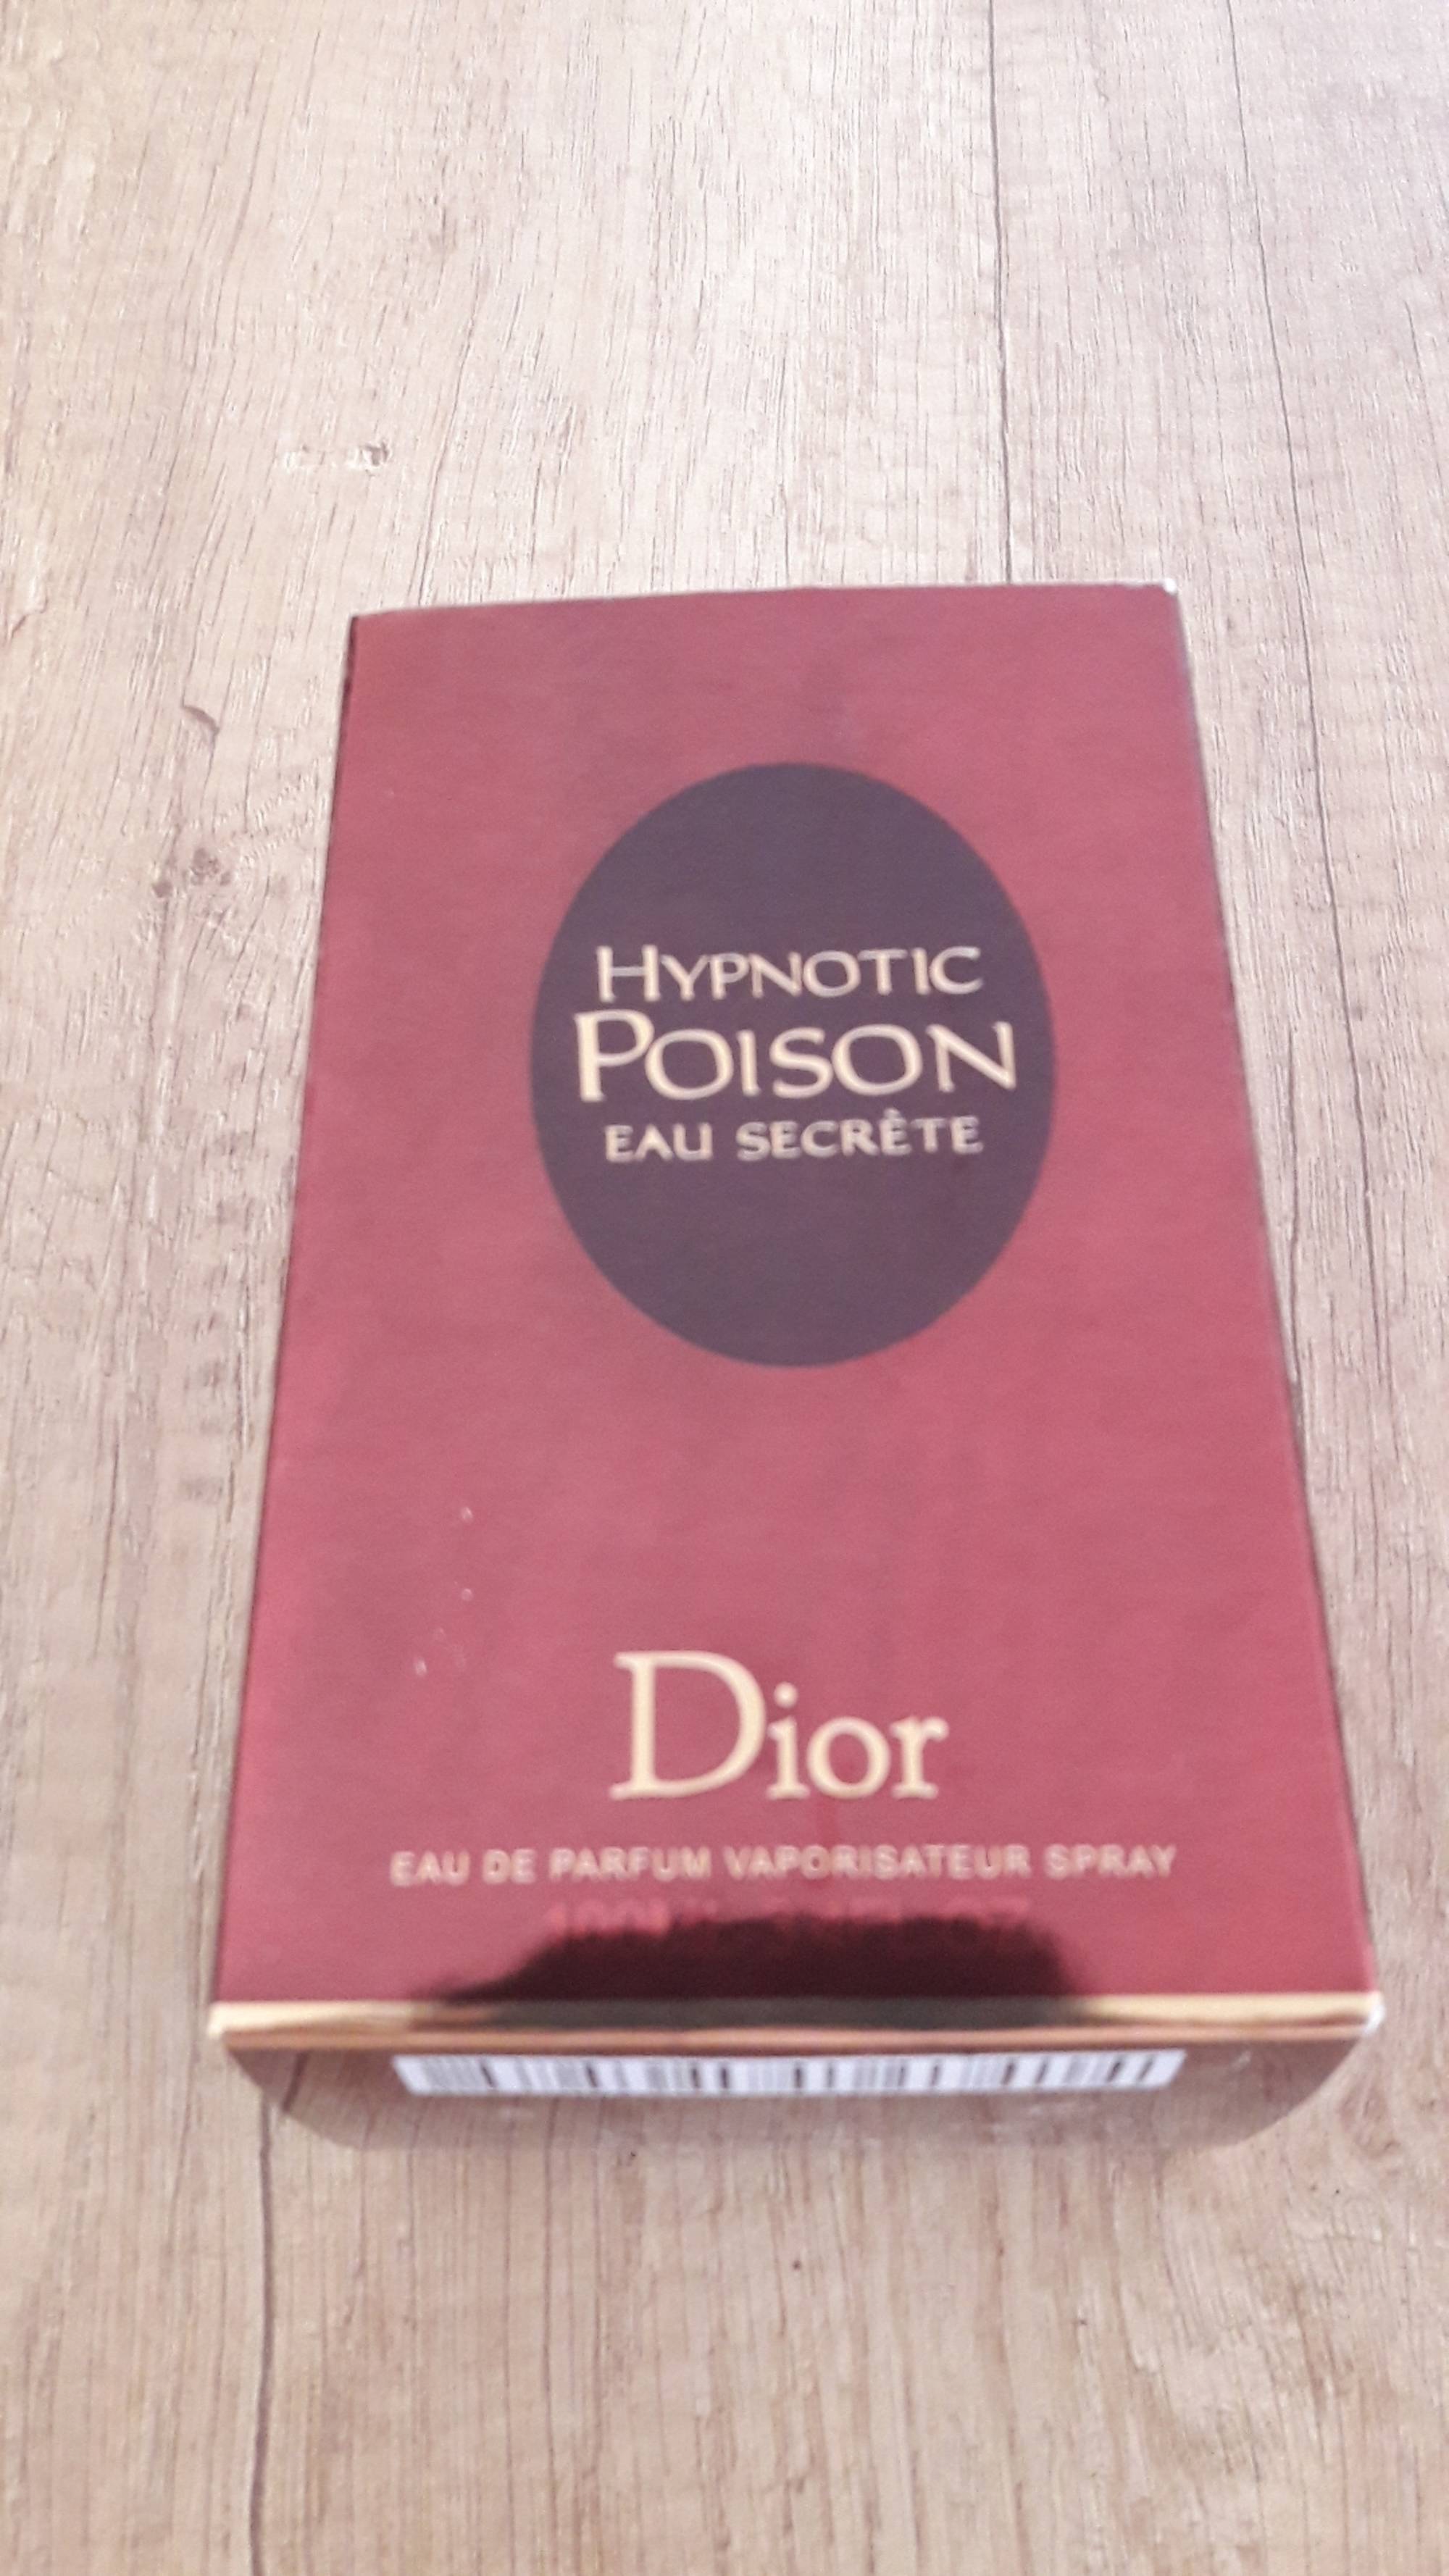 DIOR - Hypnotic poison eau secrète - Eau de parfum